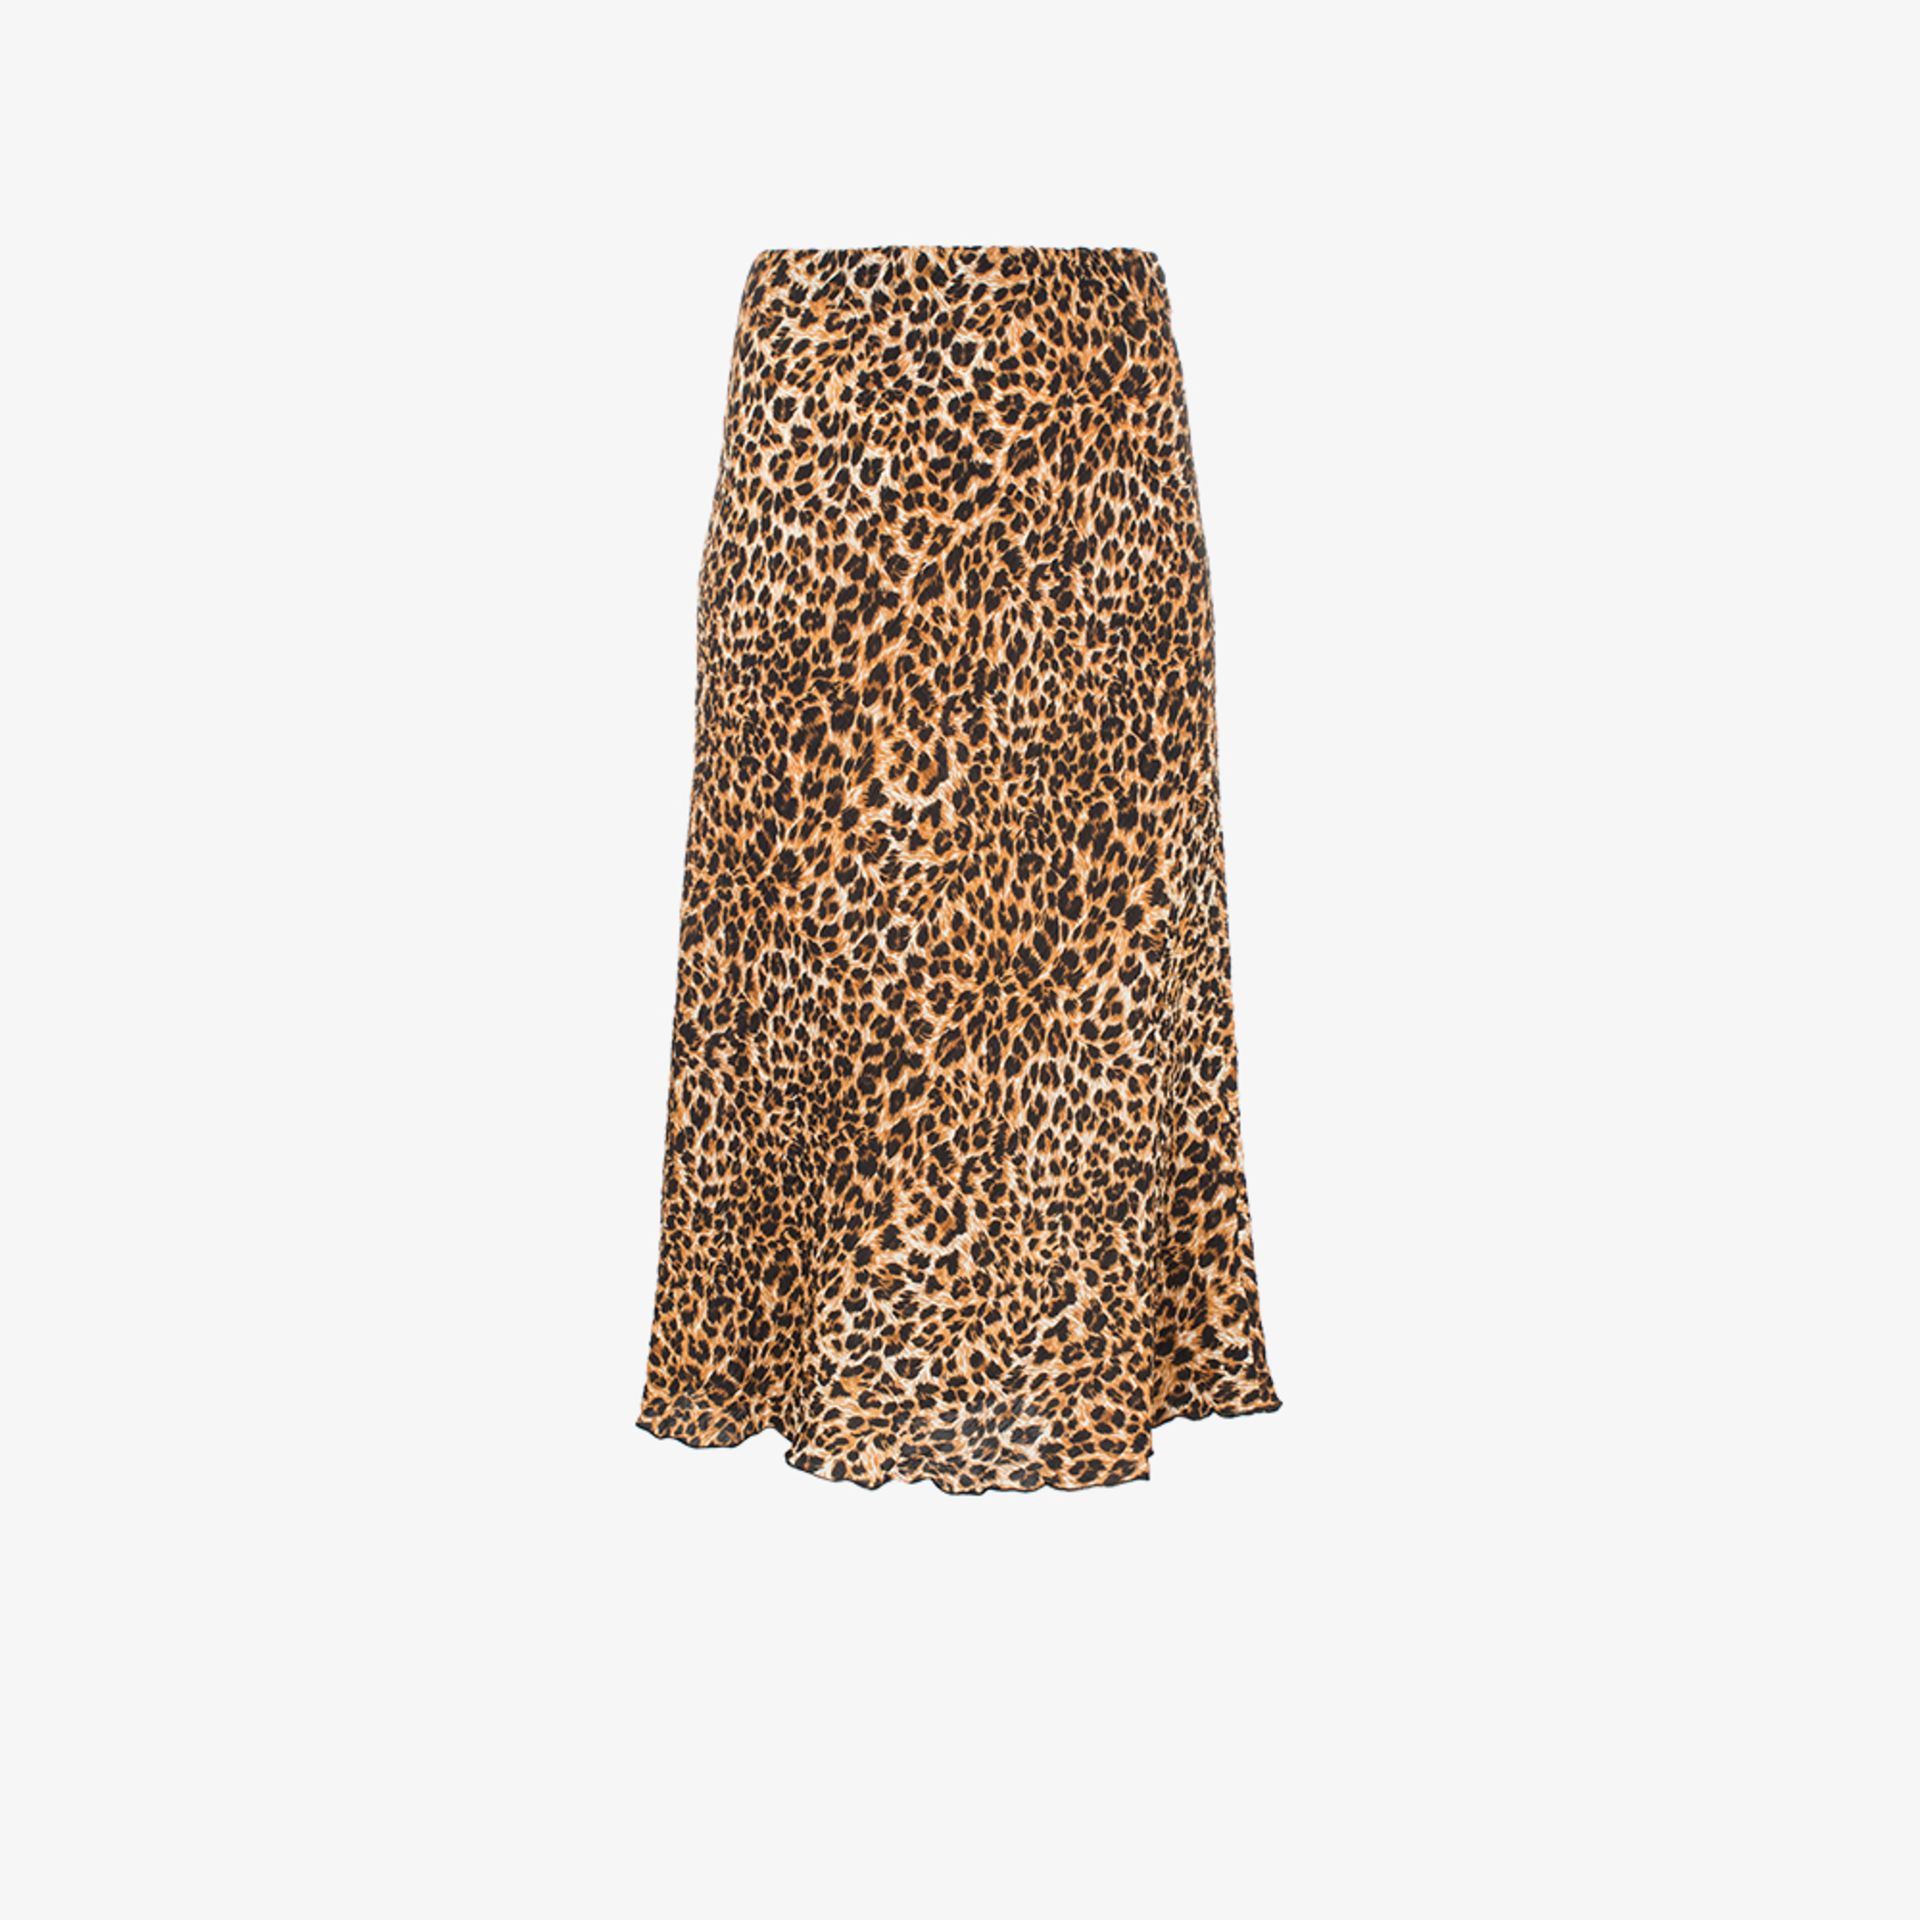 nanushka leopard skirt